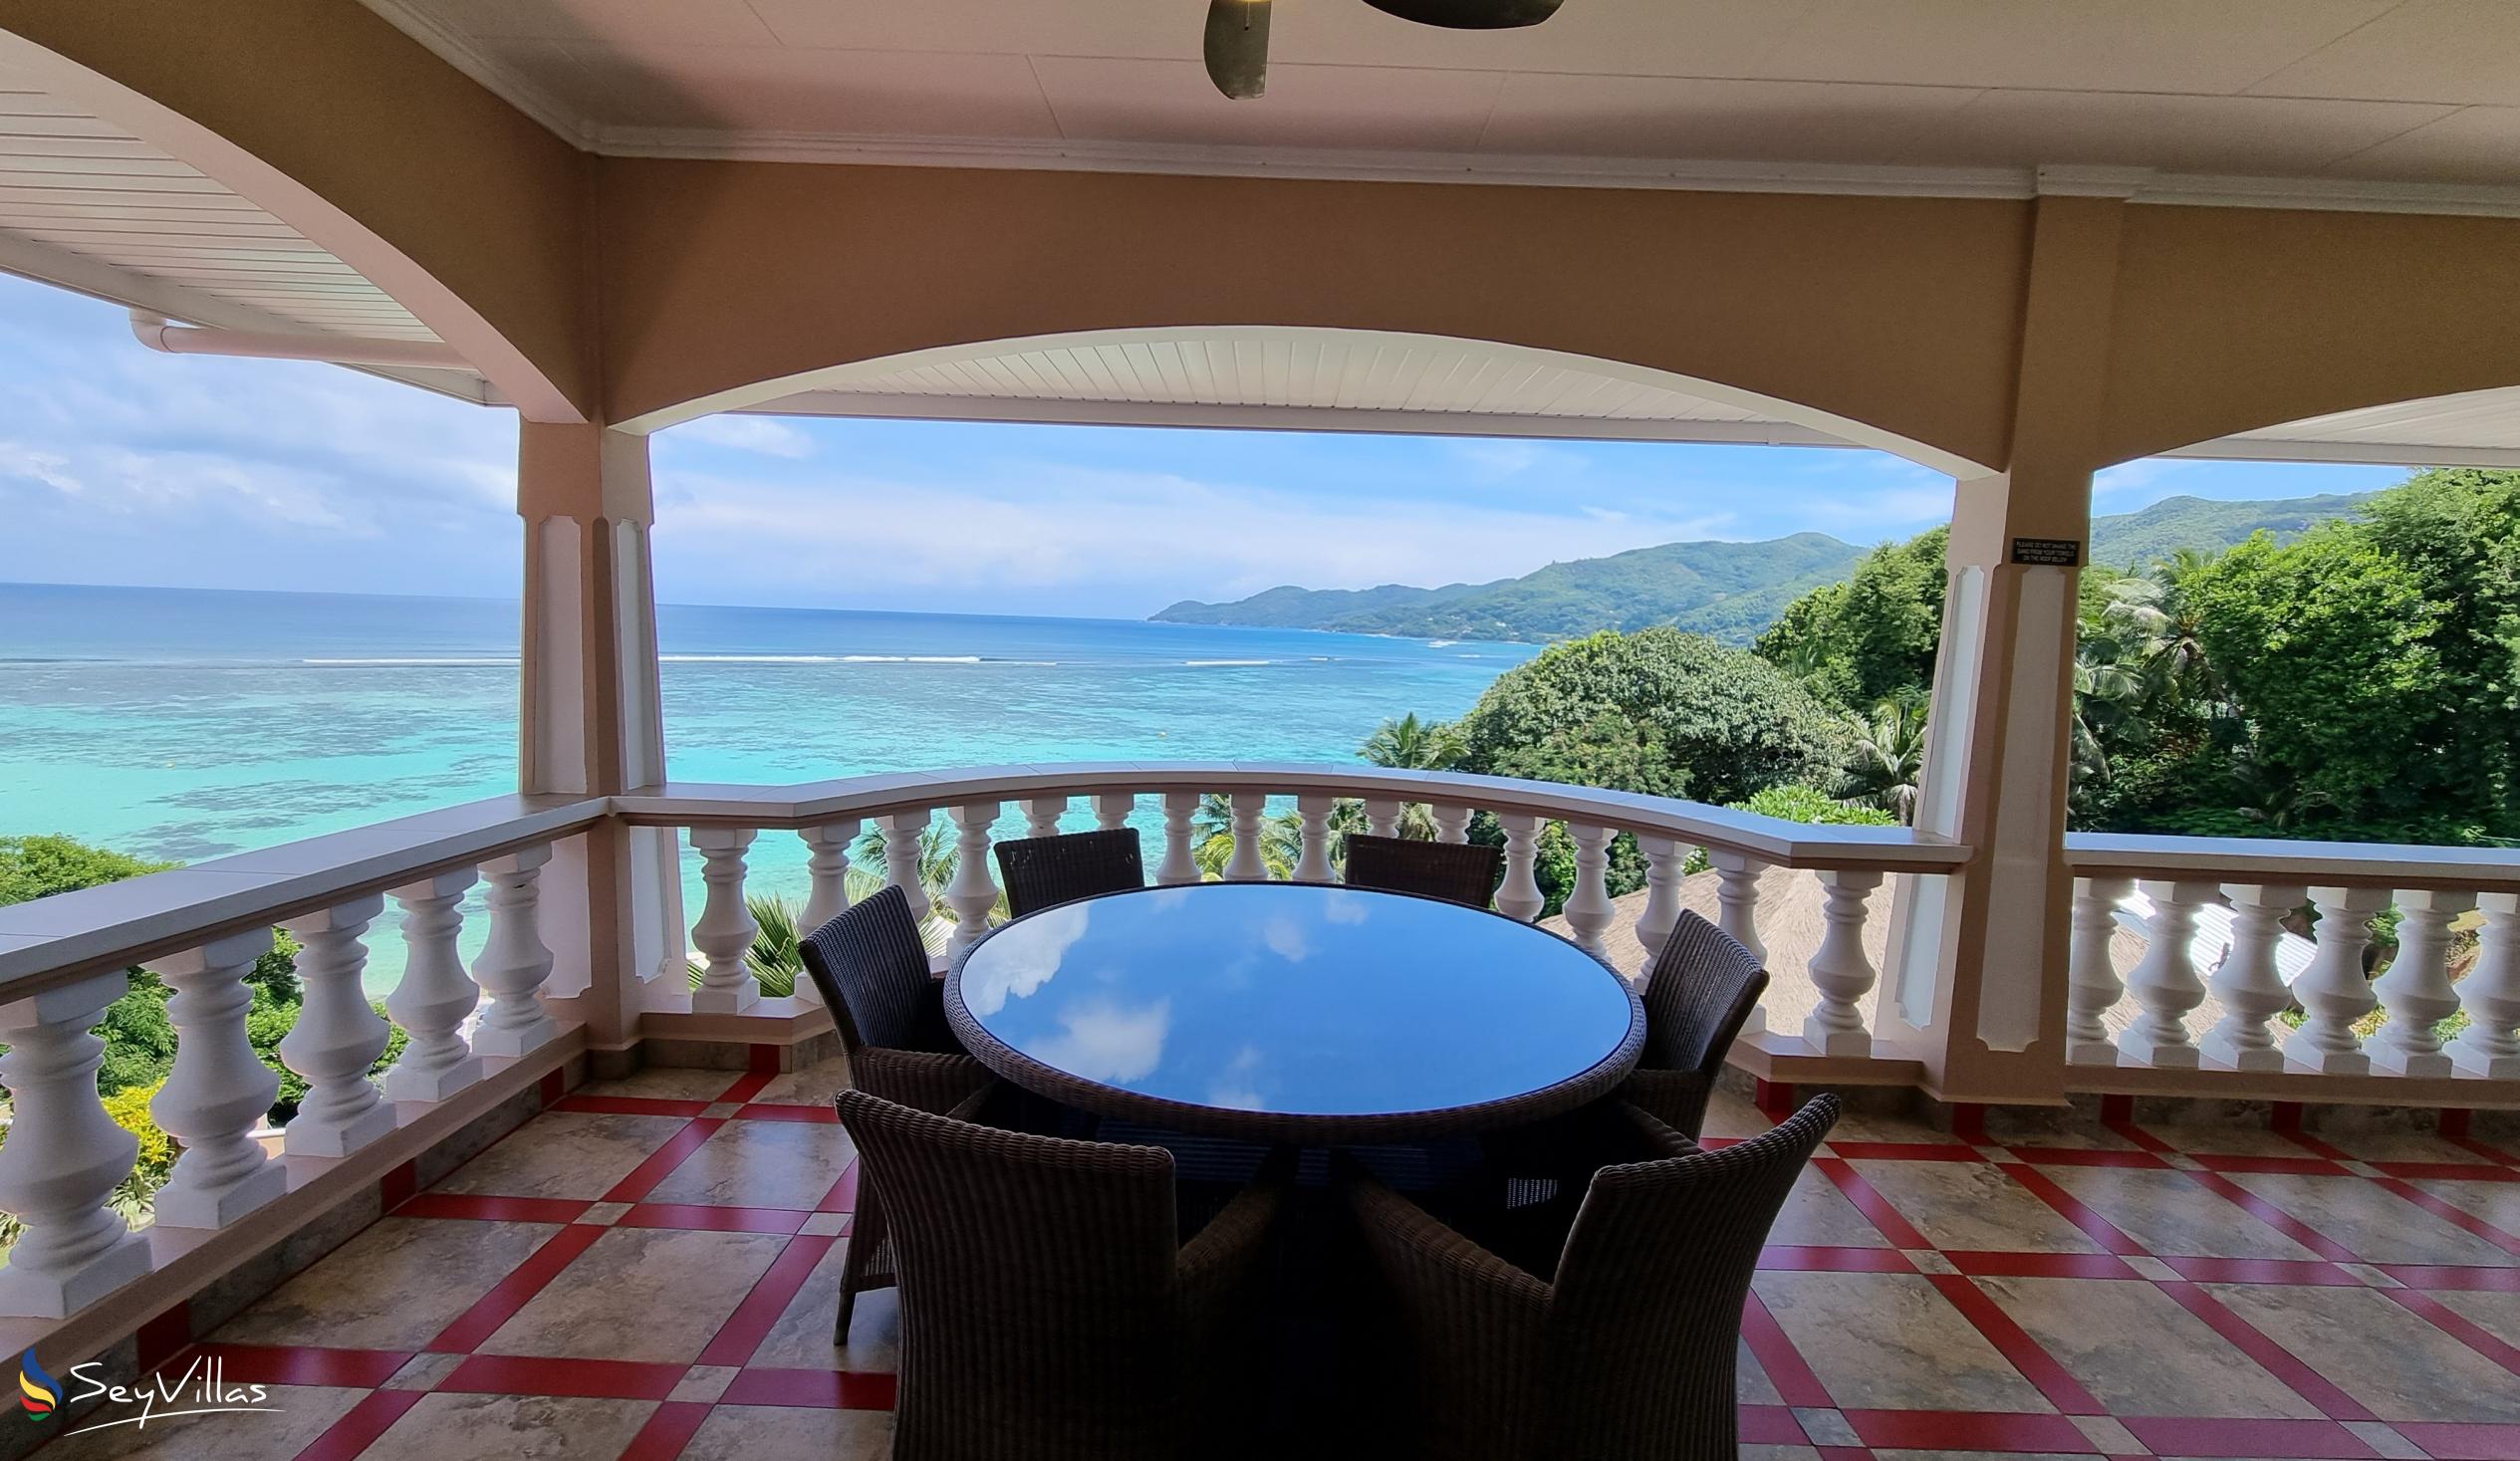 Foto 95: Au Fond de Mer View - Appartement 2 chambres avec vue sur la mer - Mahé (Seychelles)